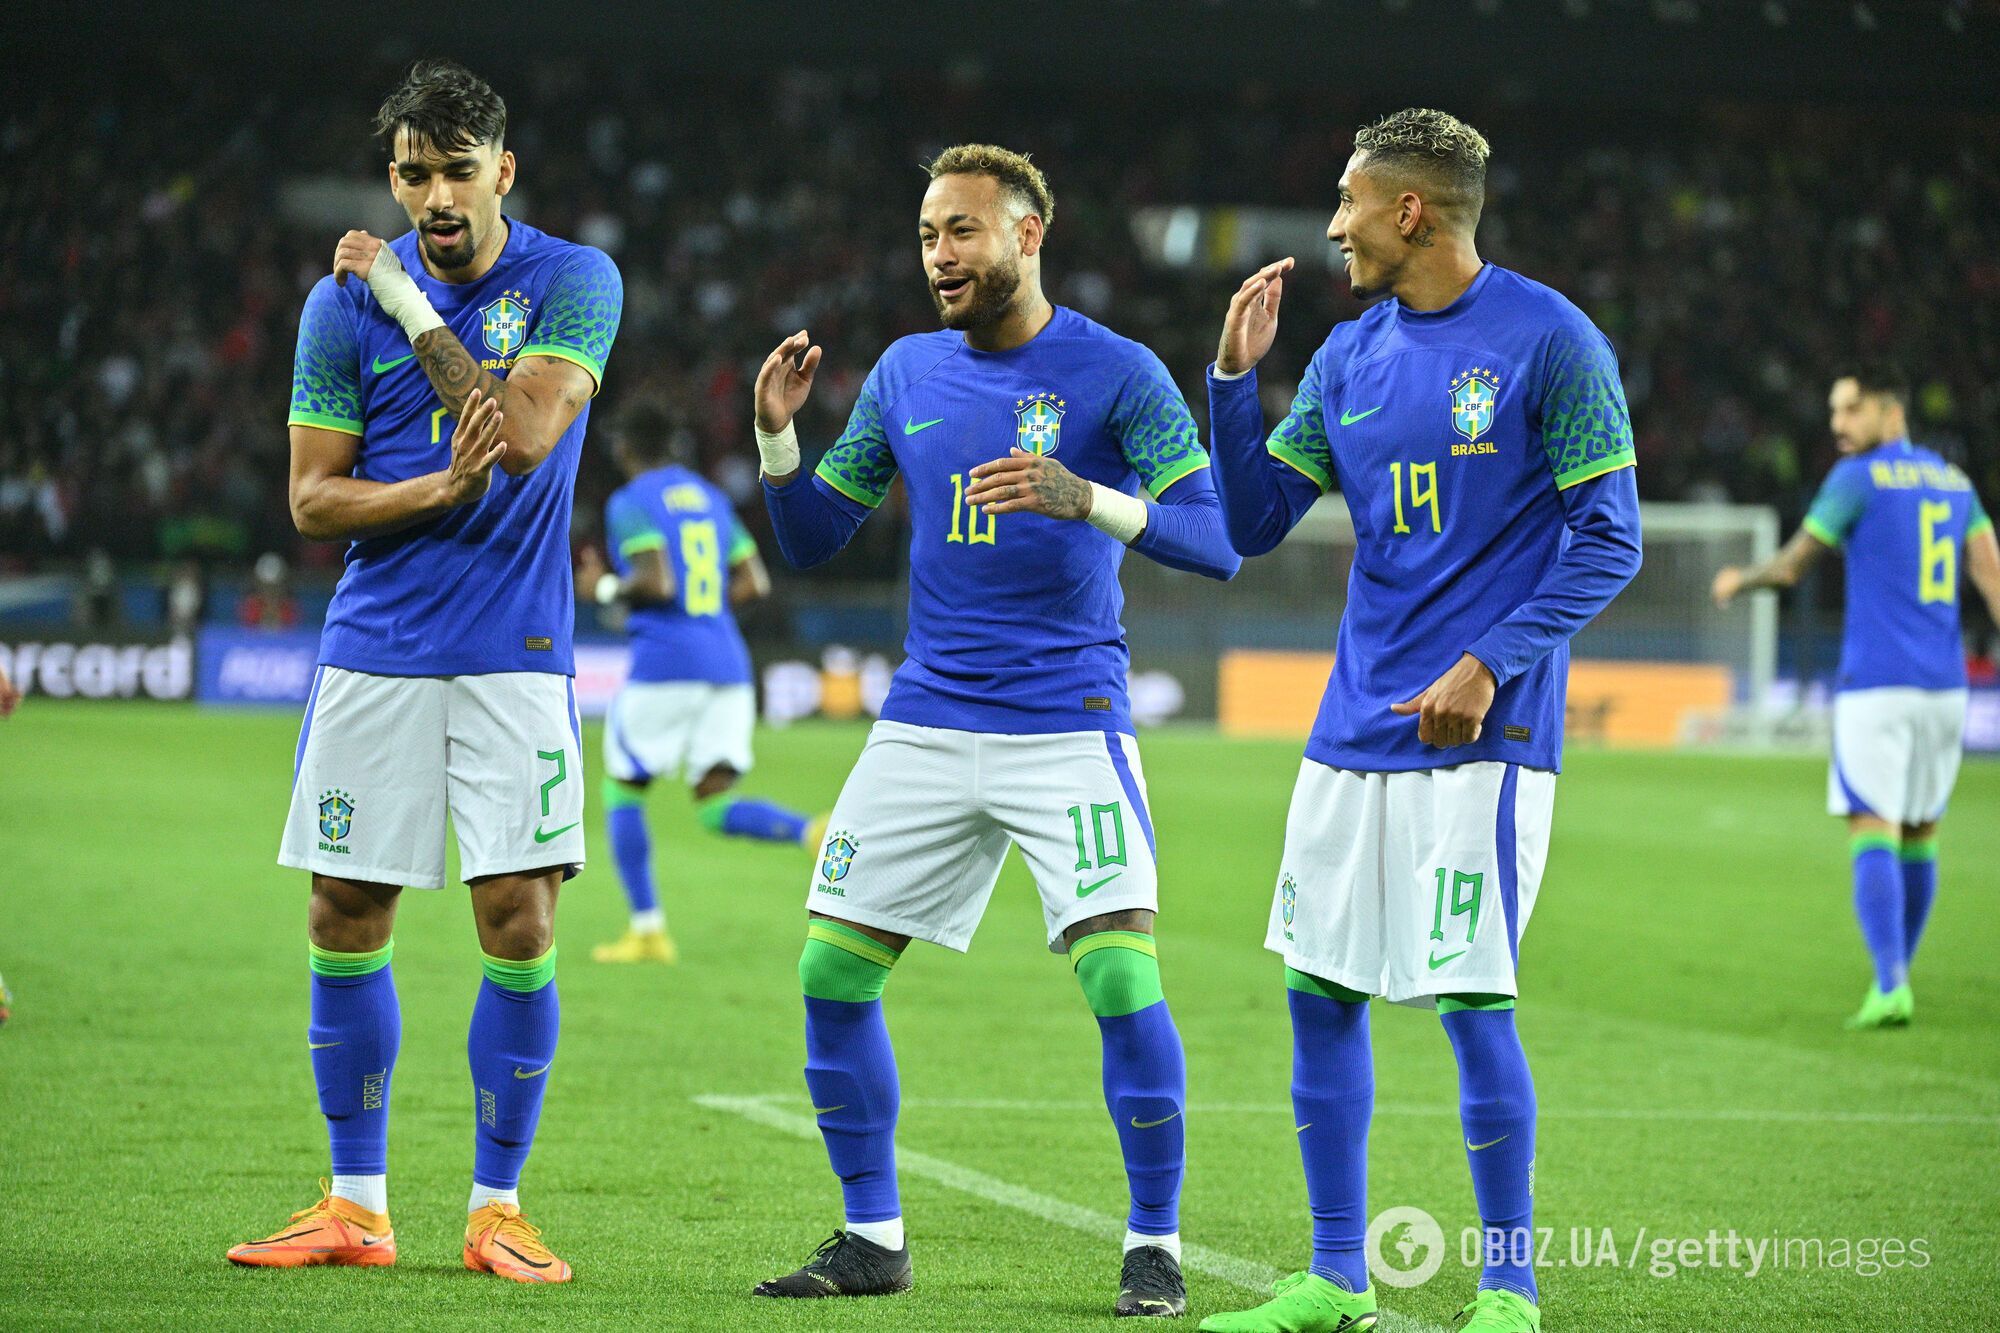 Бразилія – Сербія: онлайн-трансляція матчу ЧС-2022. Старт п'ятиразових чемпіонів